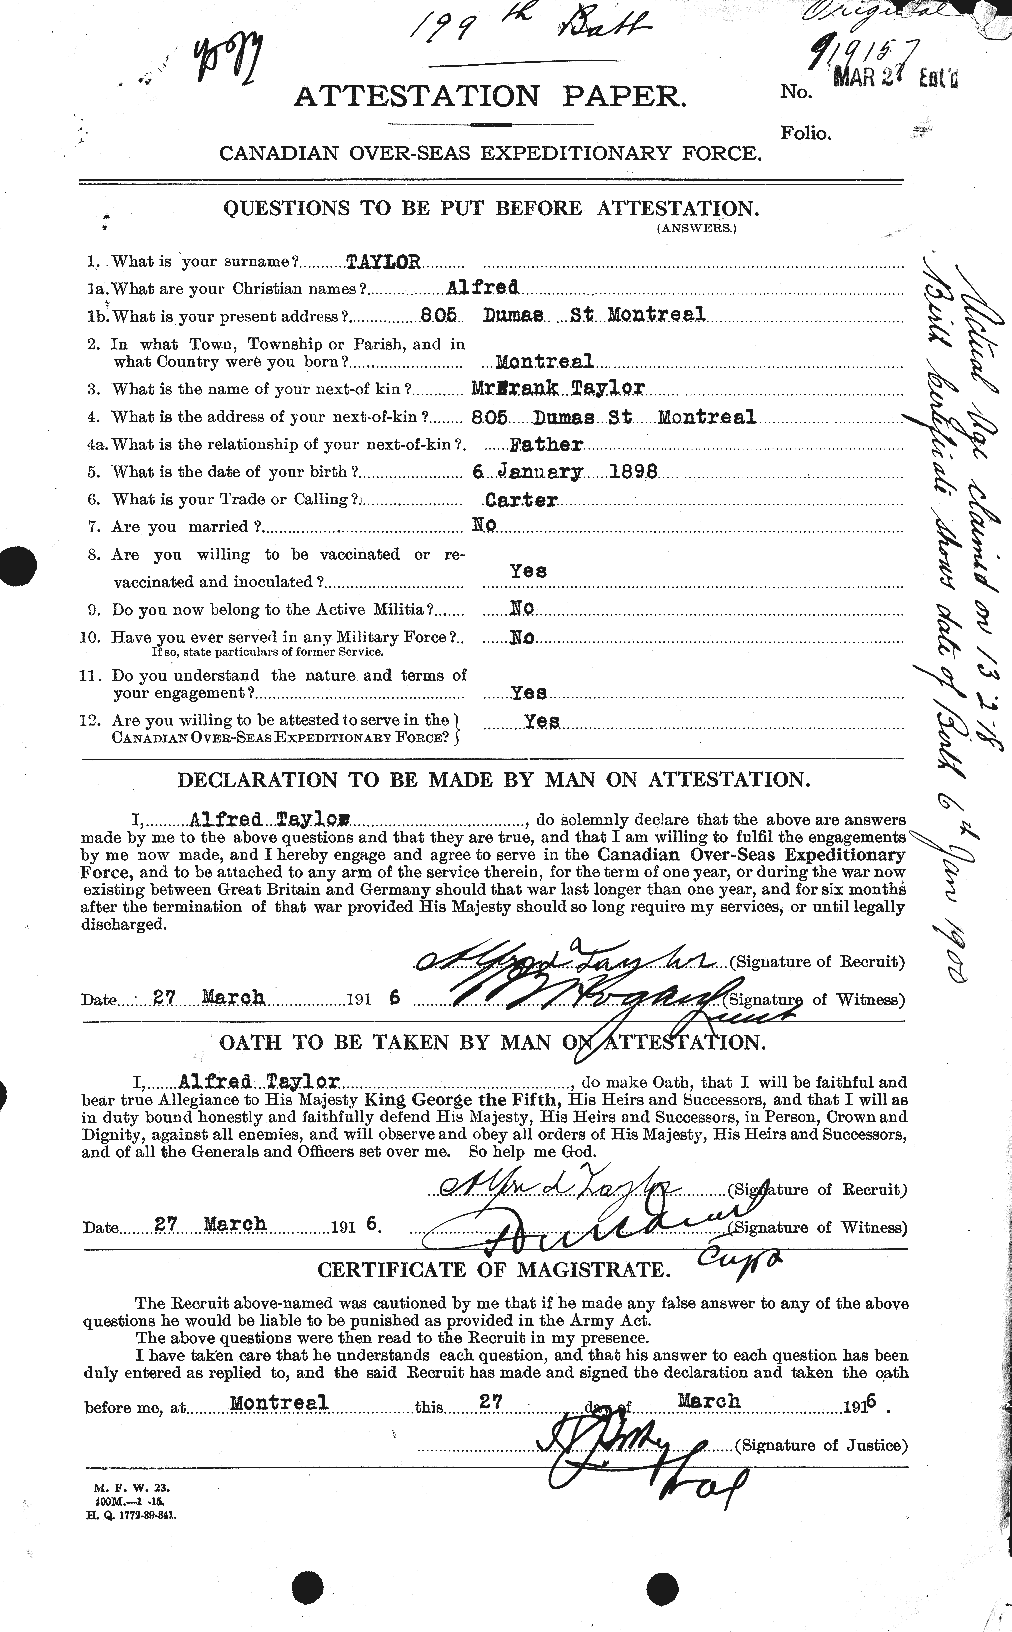 Dossiers du Personnel de la Première Guerre mondiale - CEC 626175a